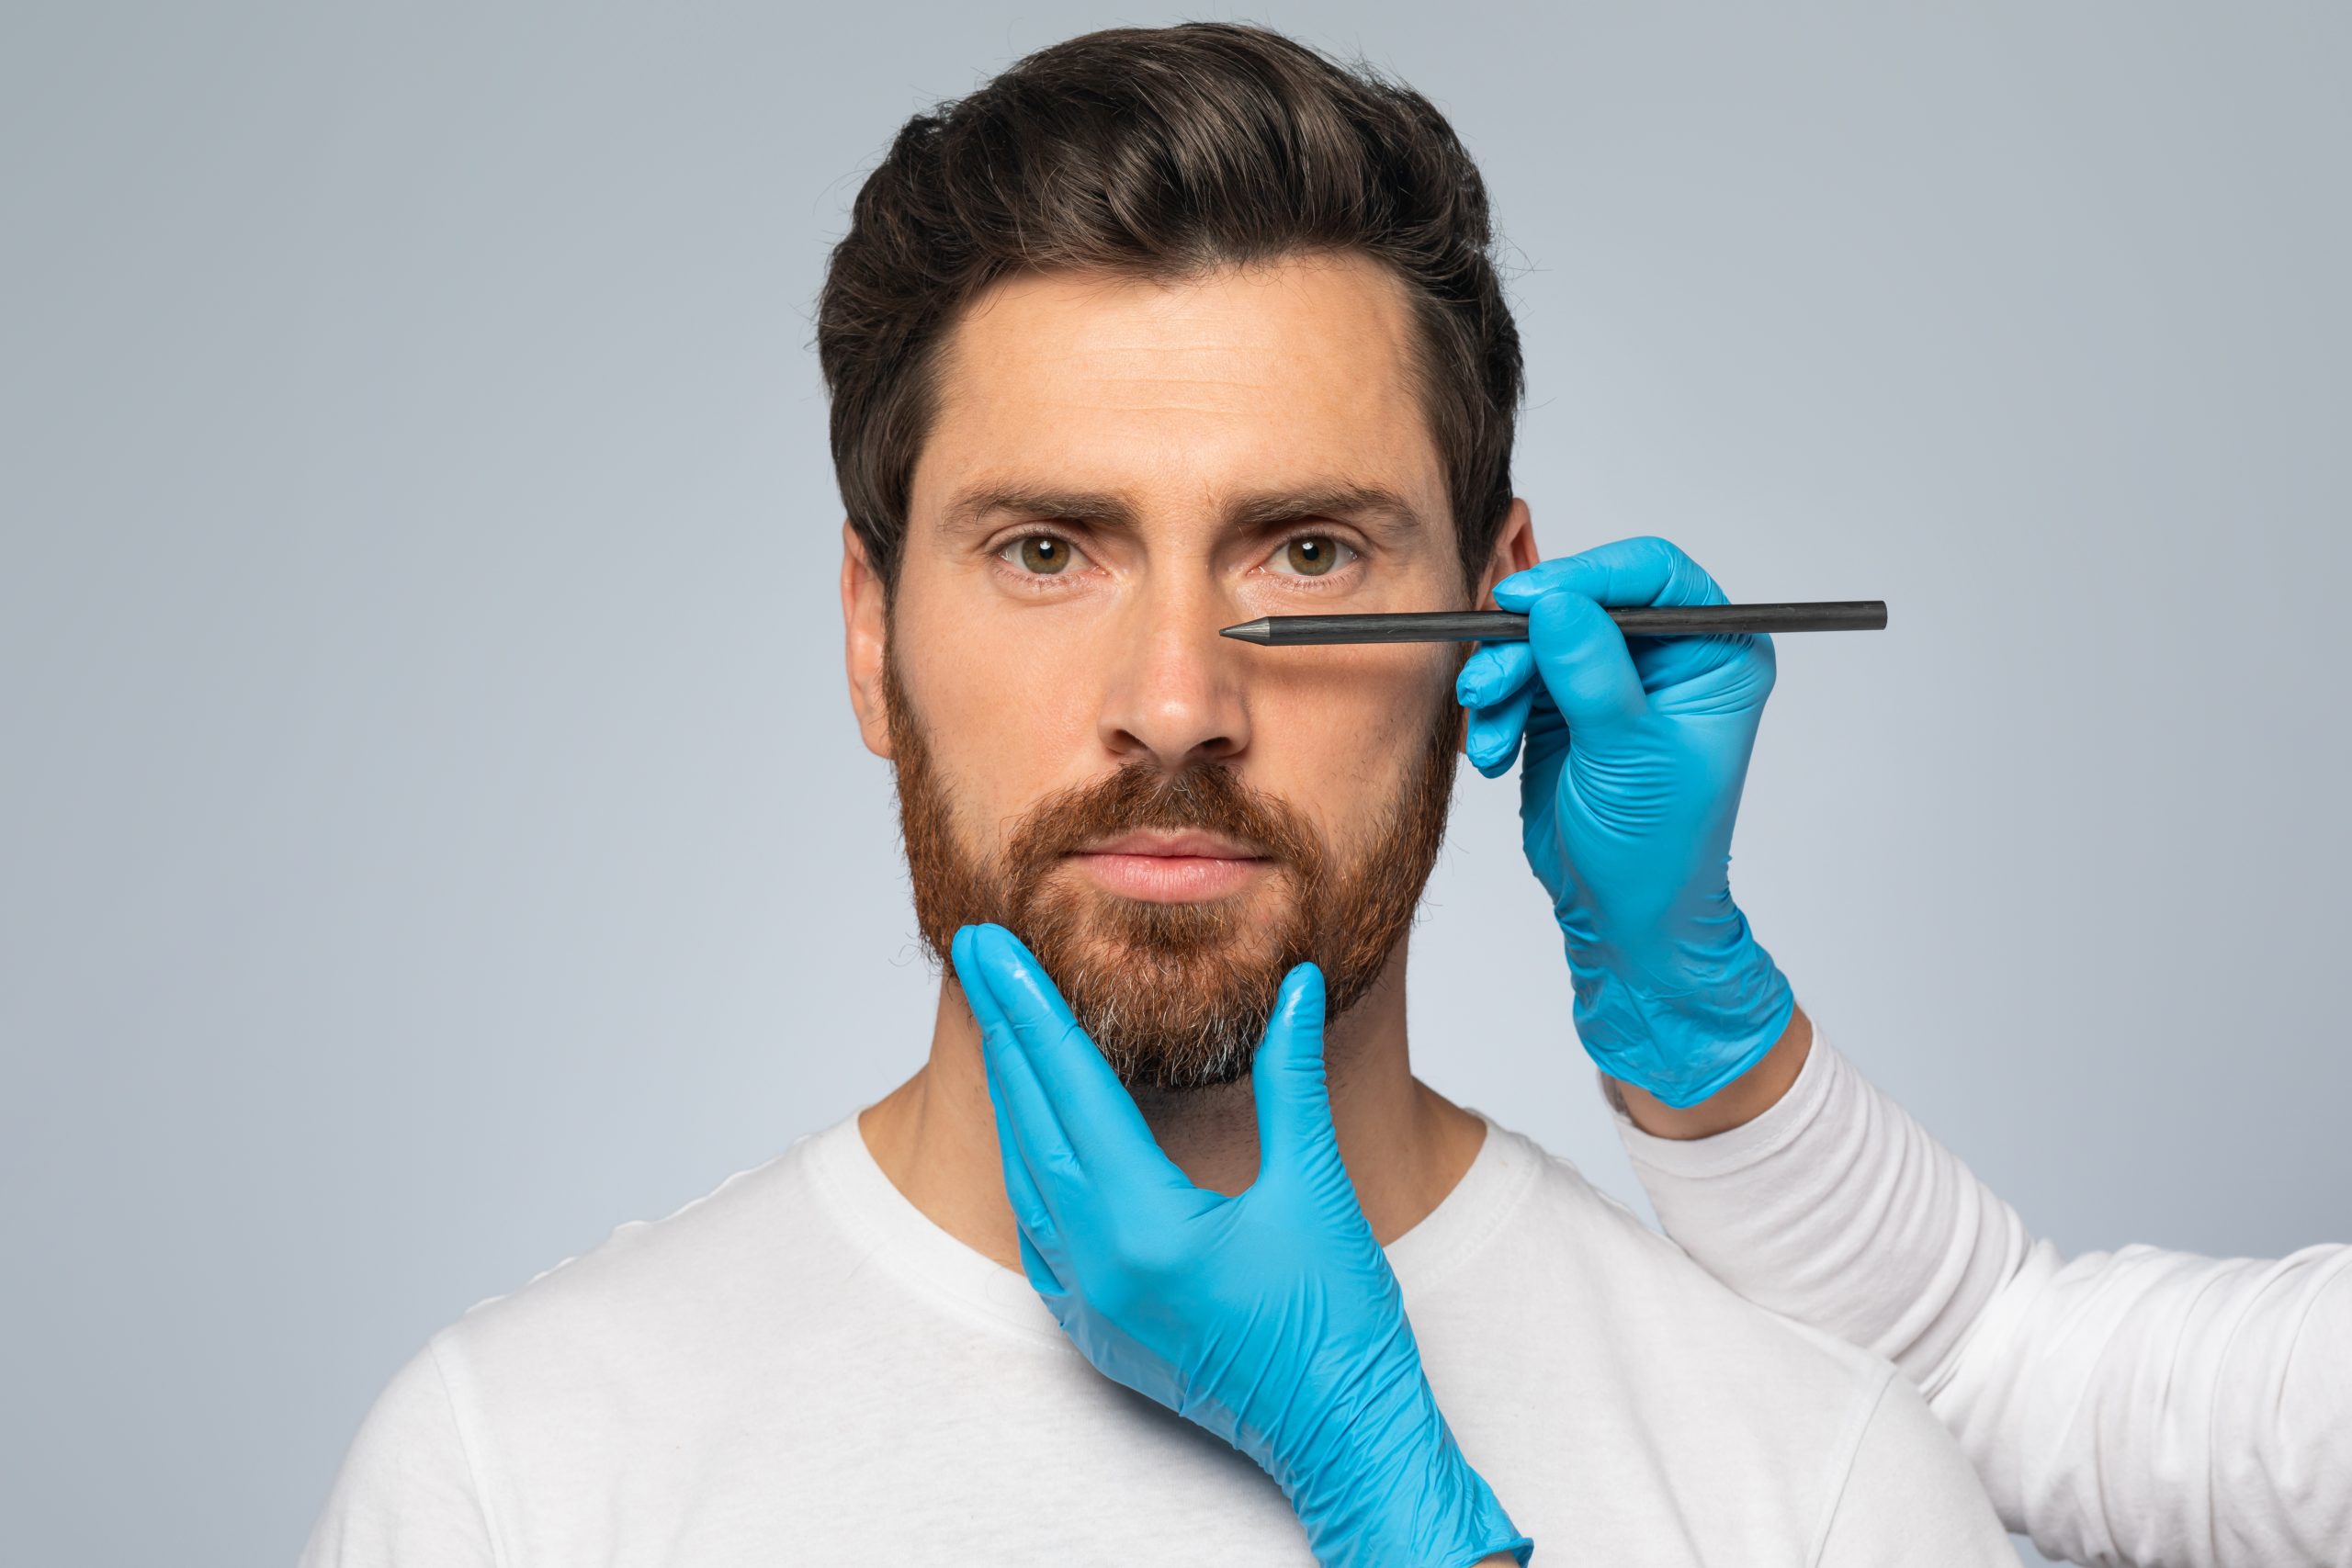 Câte tipuri de operație la nas există și ce rol au?